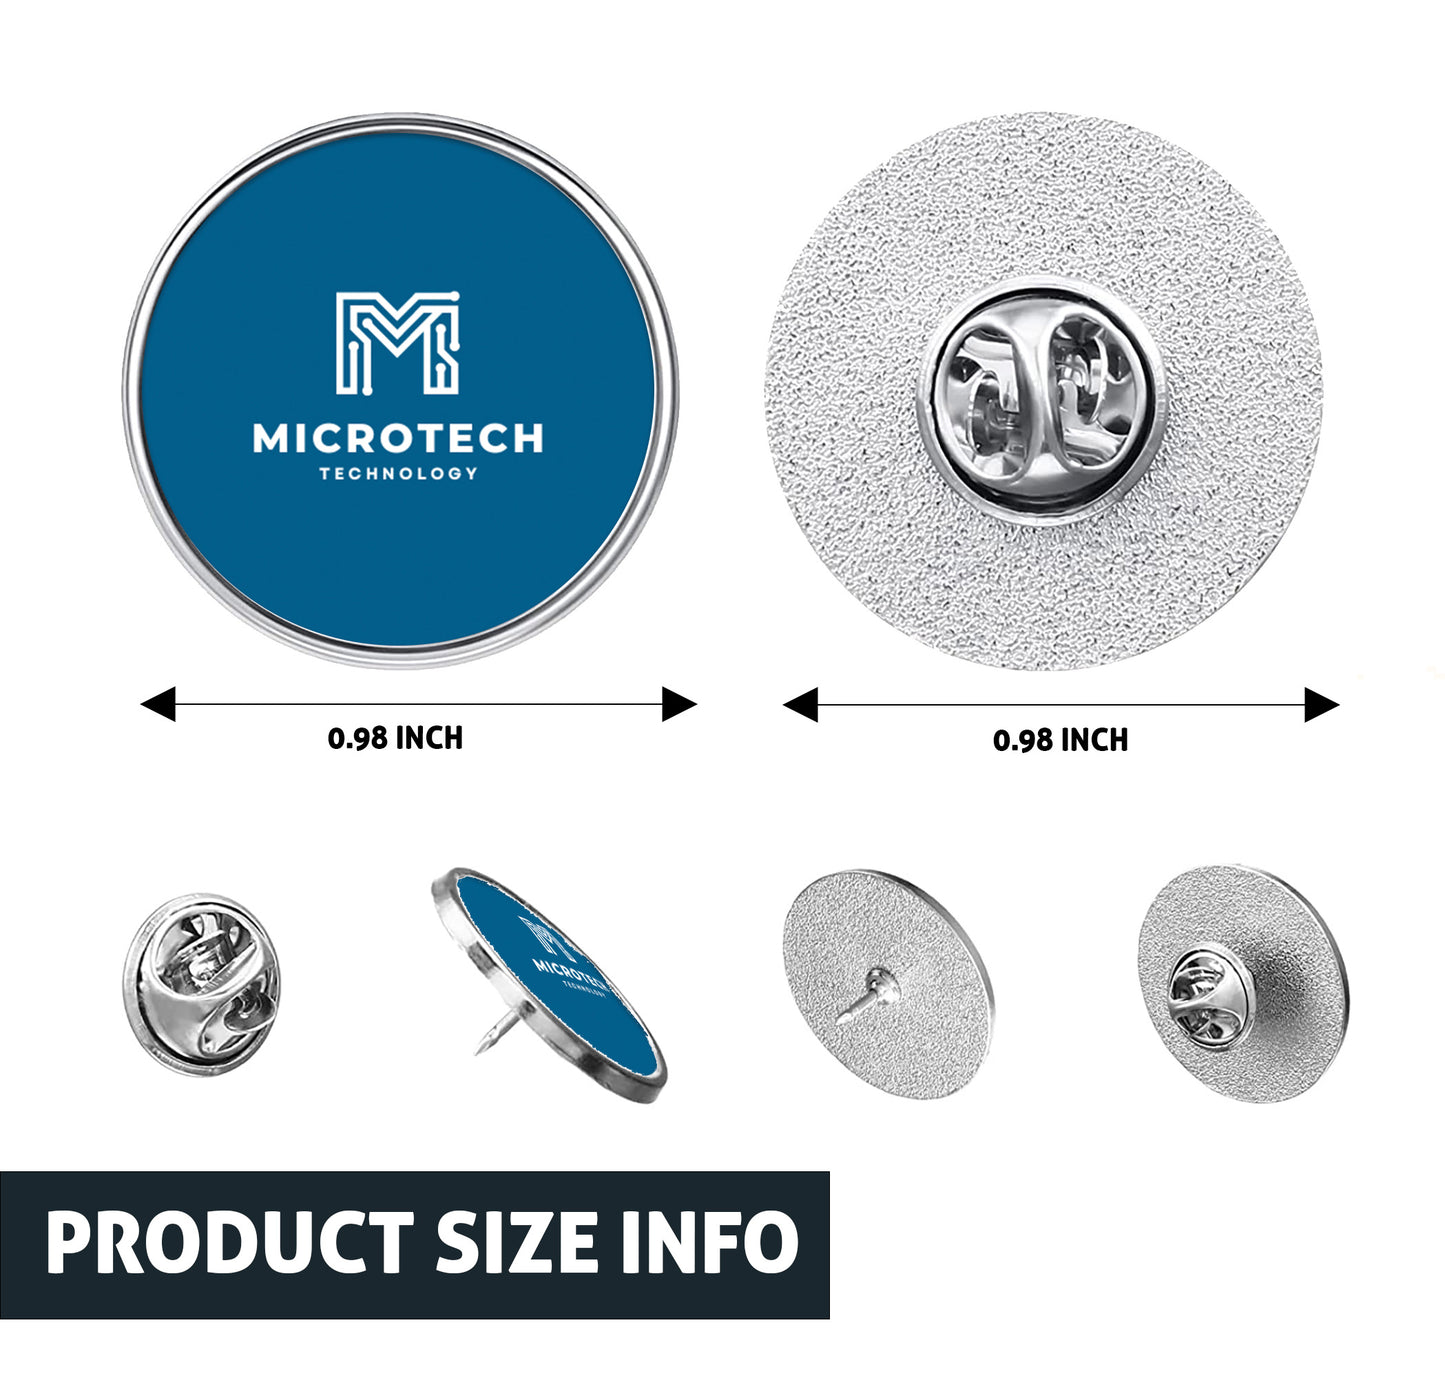 Custom Business Logo Metal Circle Pin Buttons - Bulk Discounts Available